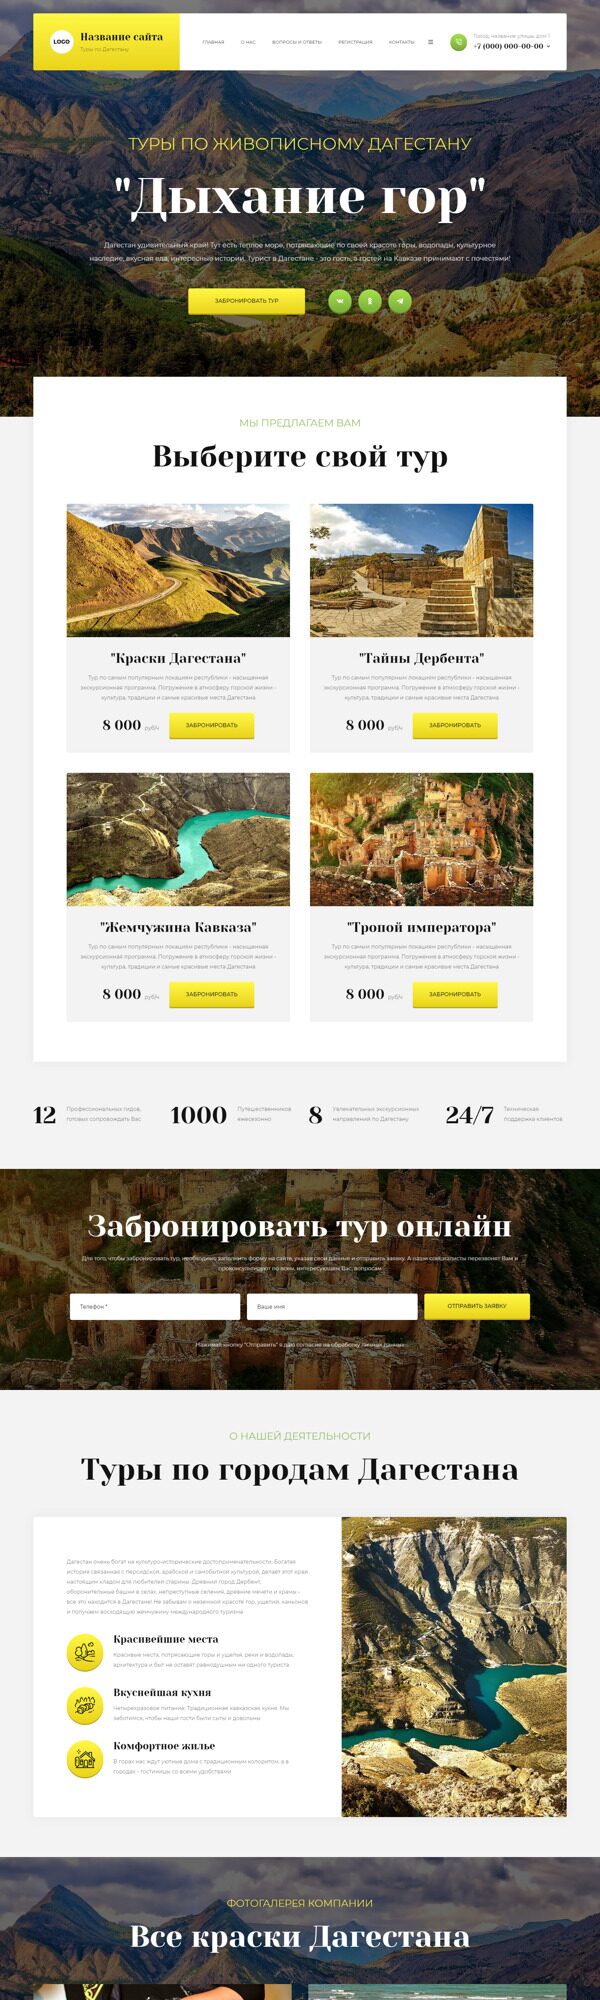 Готовый Сайт-Бизнес № 5669177 - Туры по Дагестану (Десктопная версия)